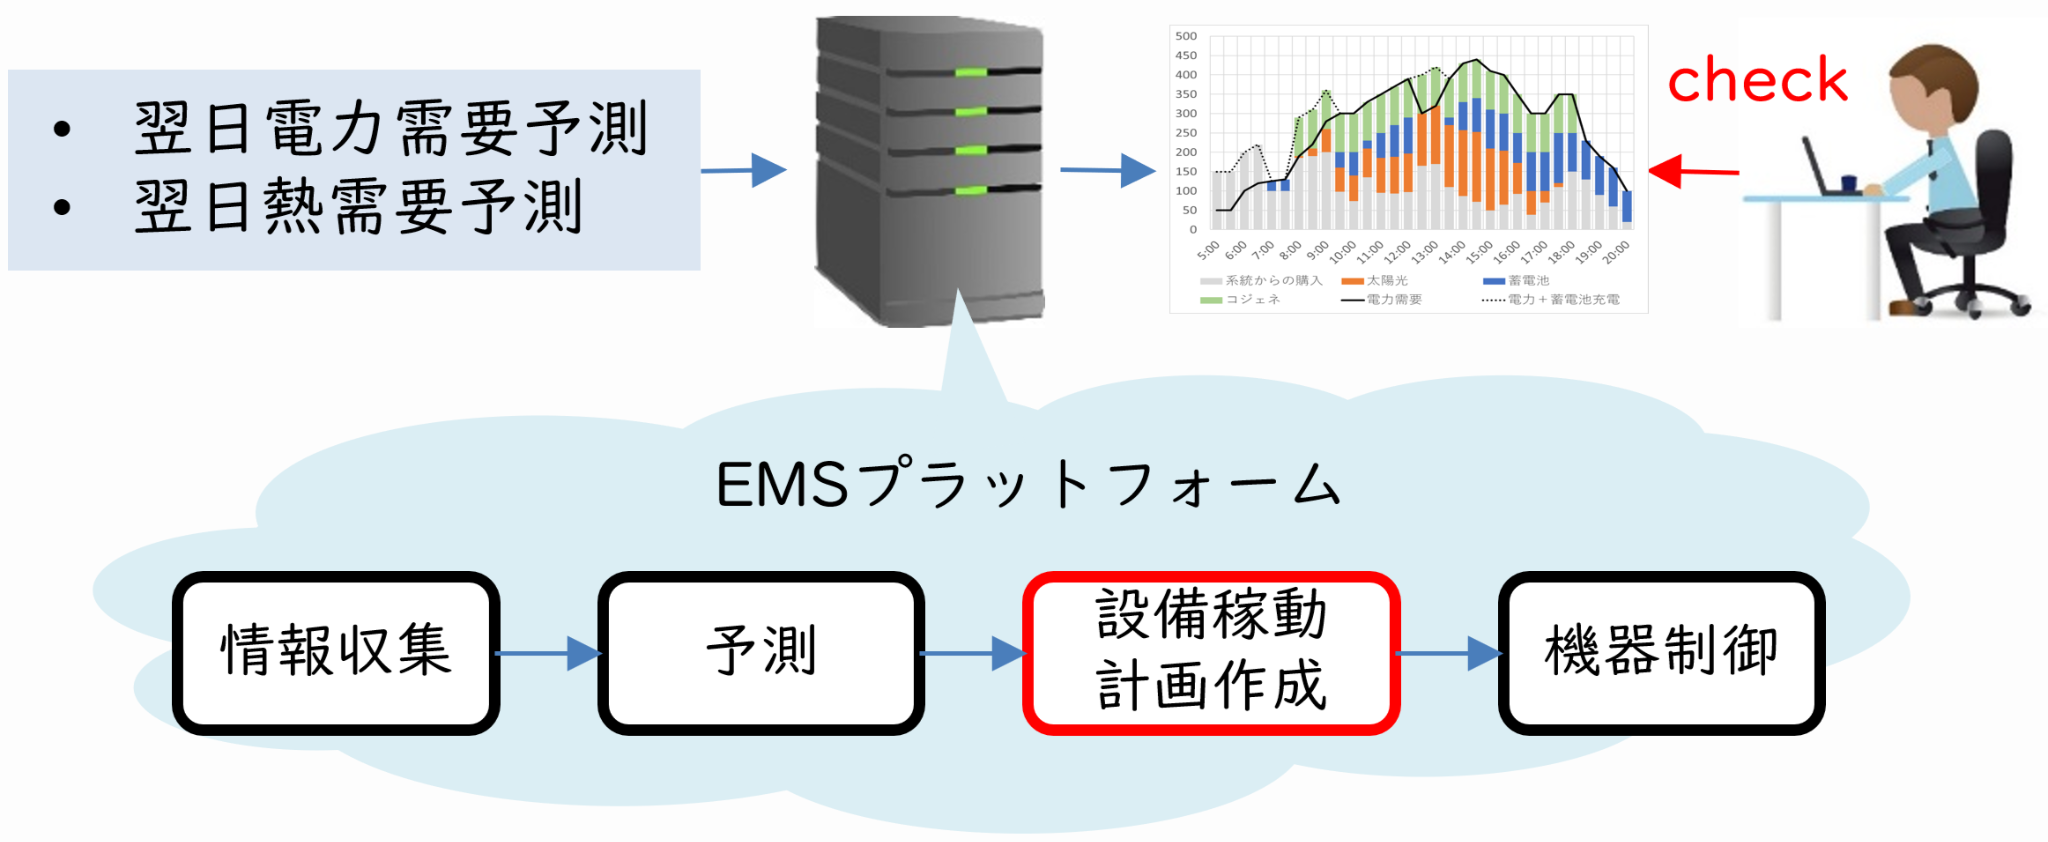 エネルギーマネジメントシステム(EMS)を活用した運用（イメージ）